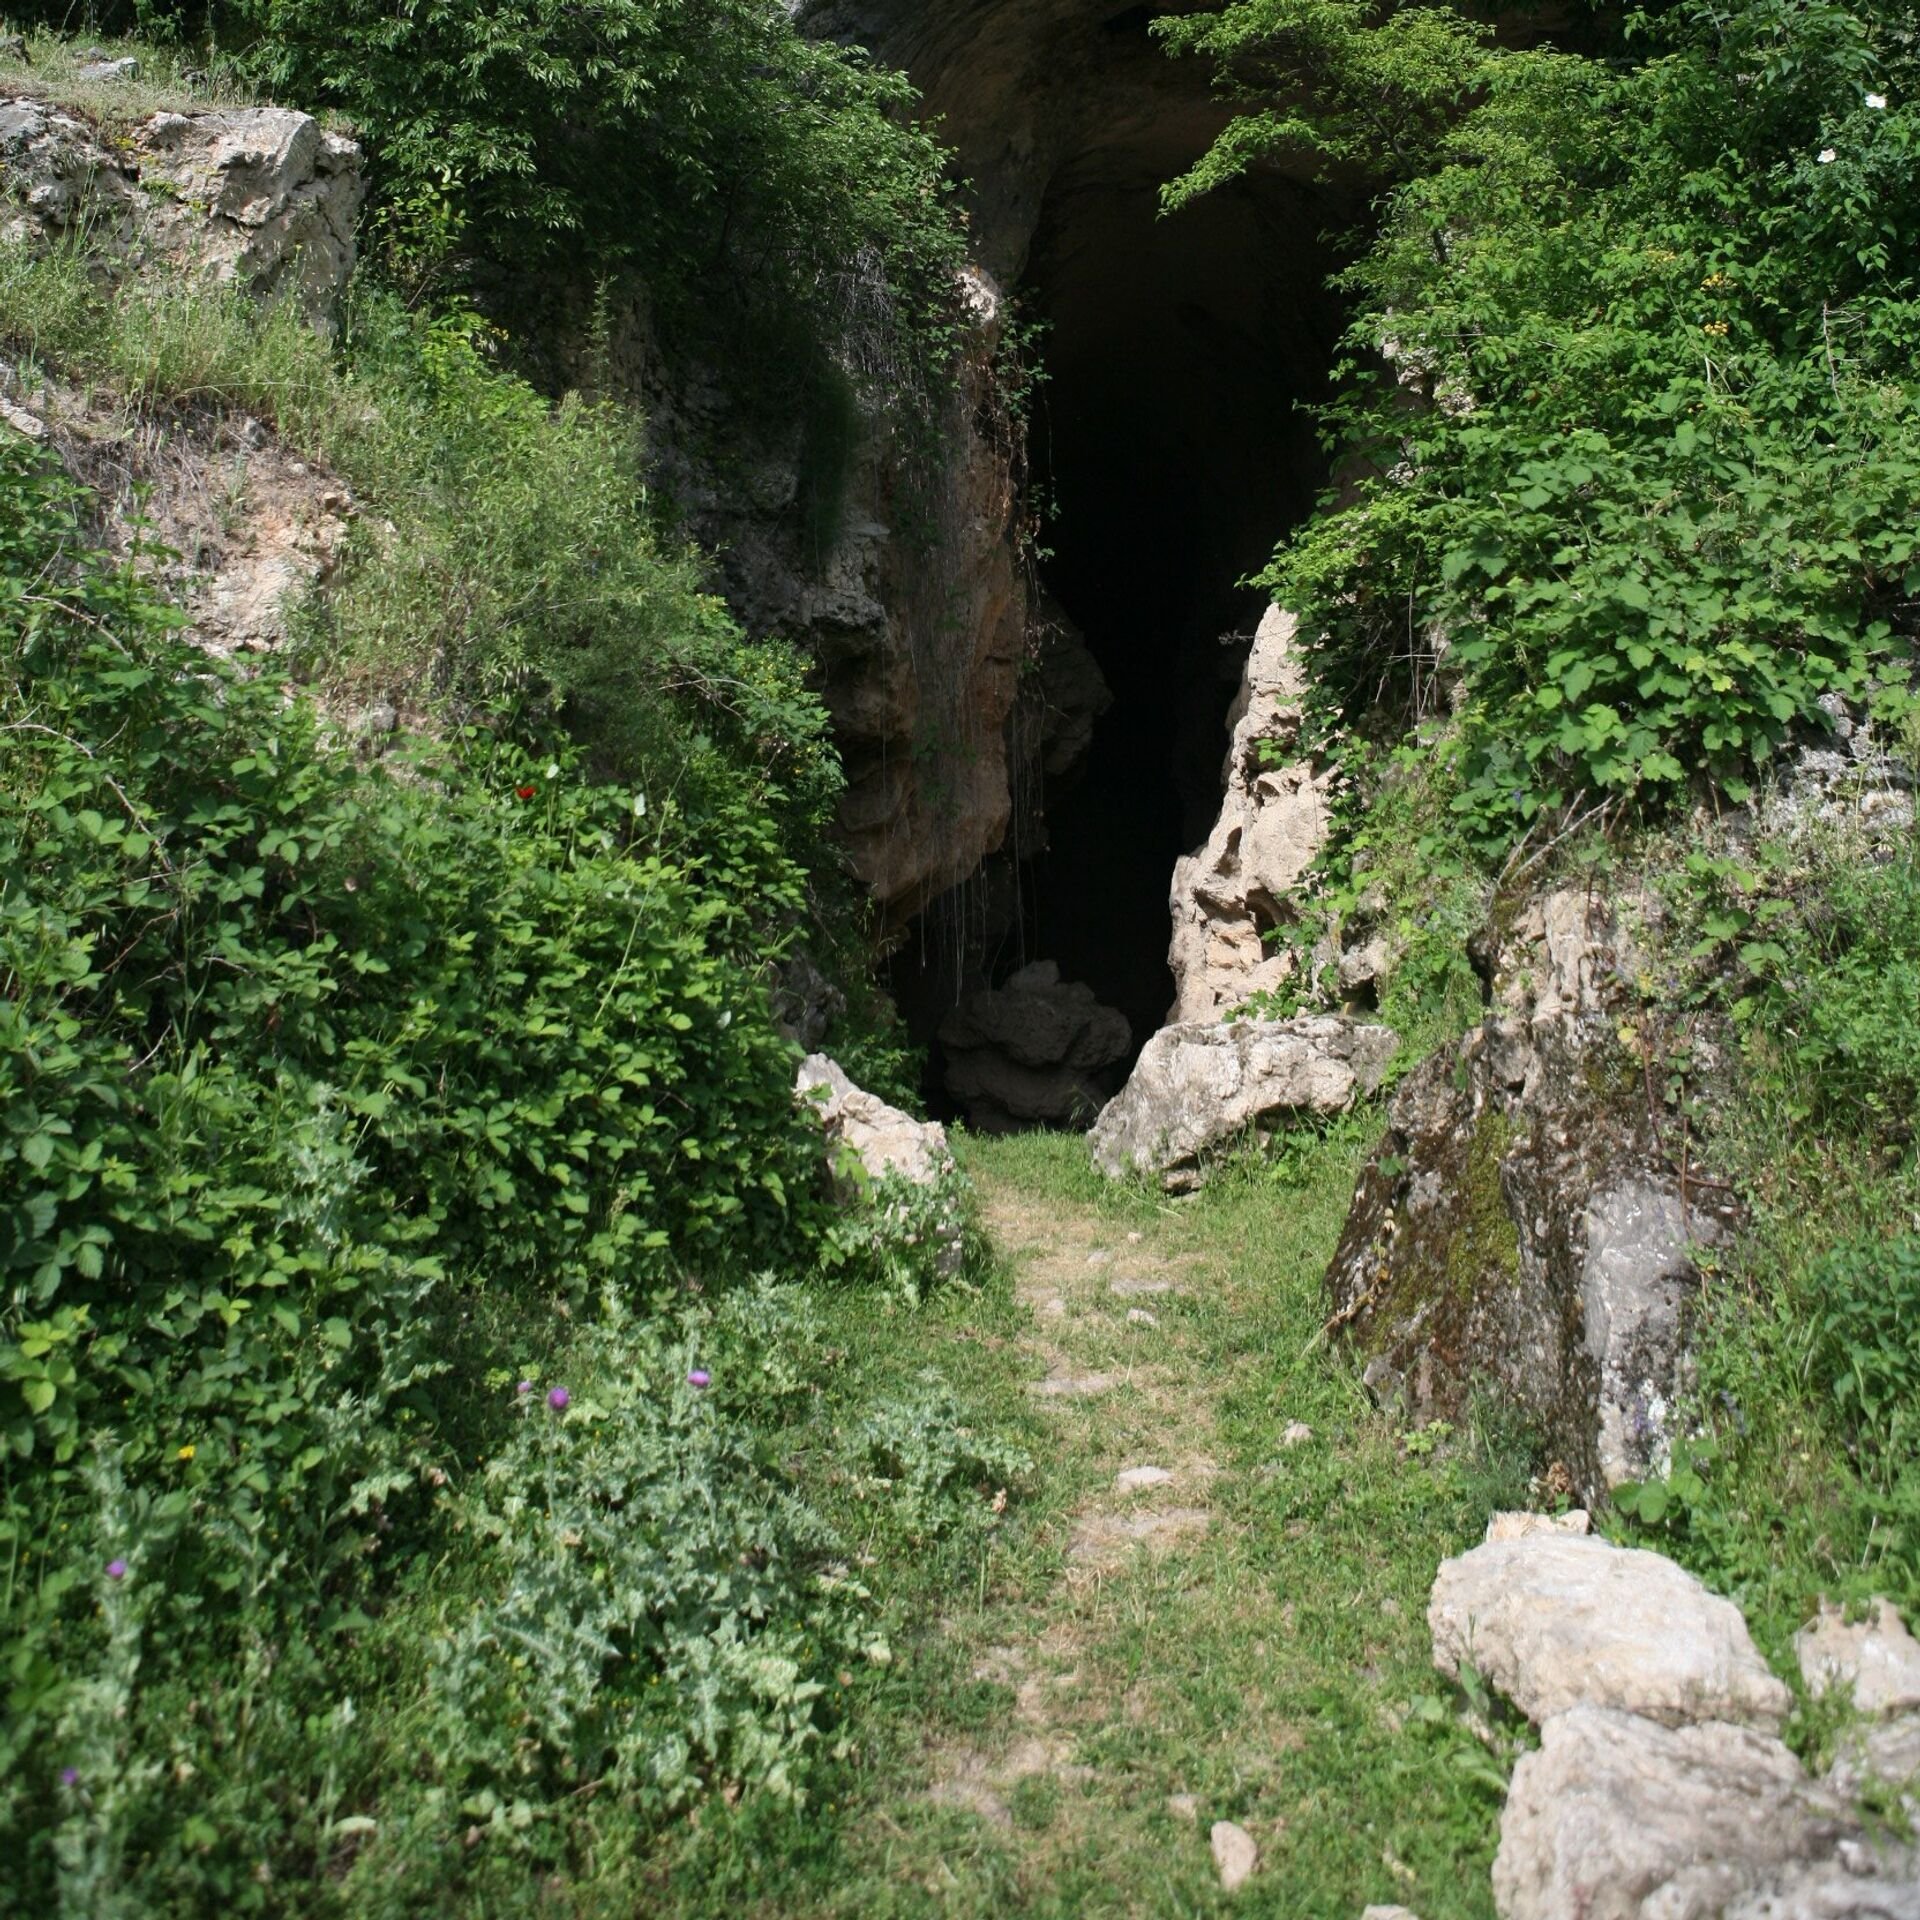 Ermənistan Azıx və Tağlar mağaralarının UNESCO-ya daxil edilməsinə qarşı çıxıb